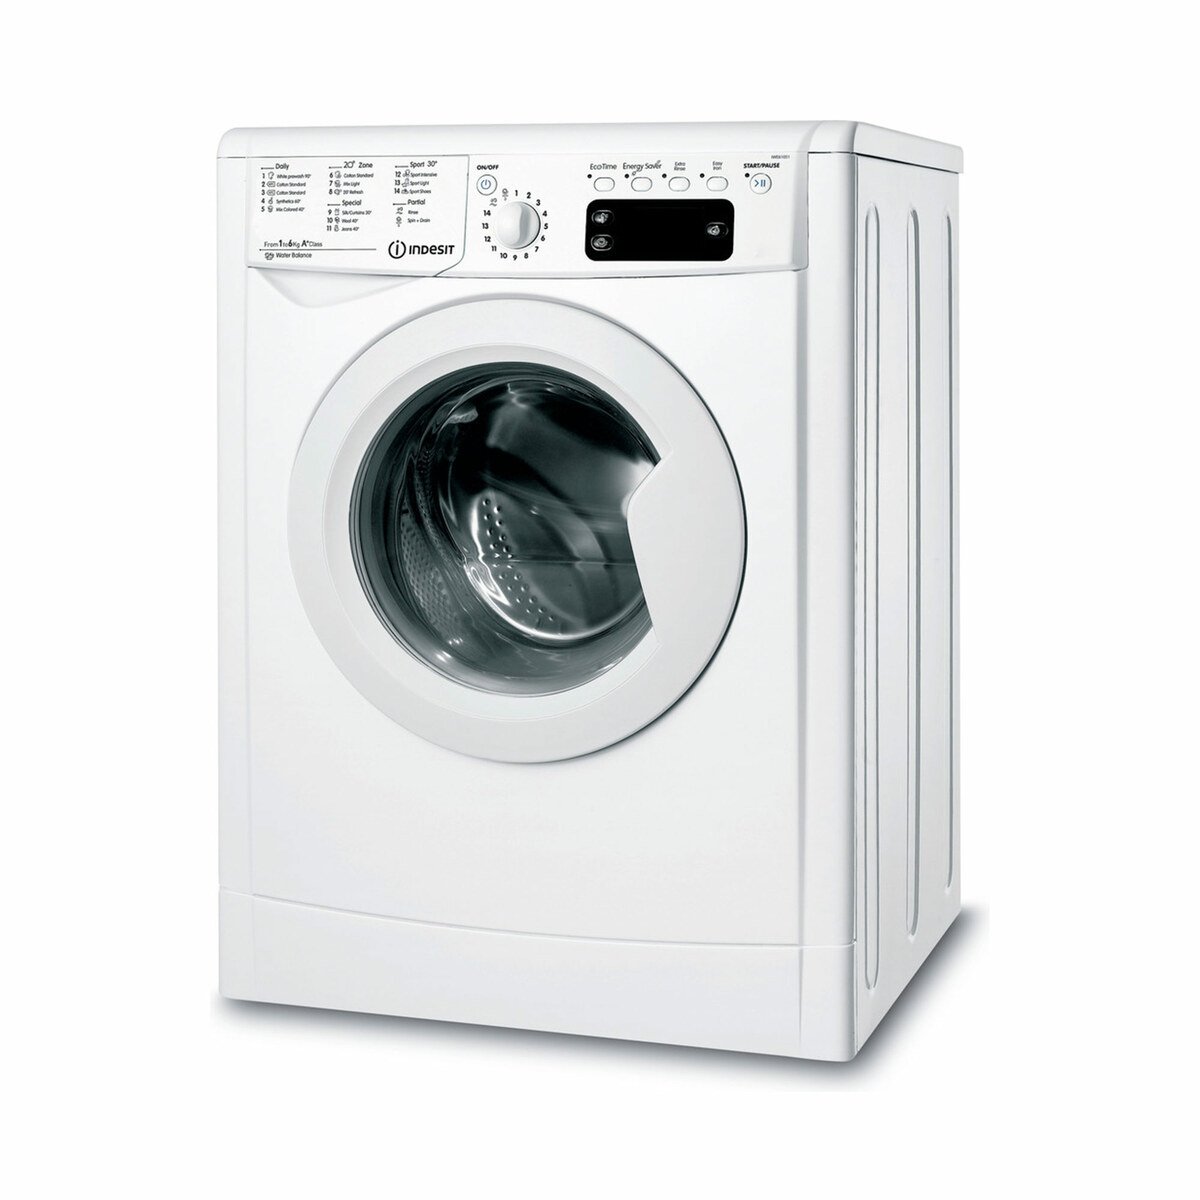 Indesit Front Load Washing Machine IWE61051 6KG